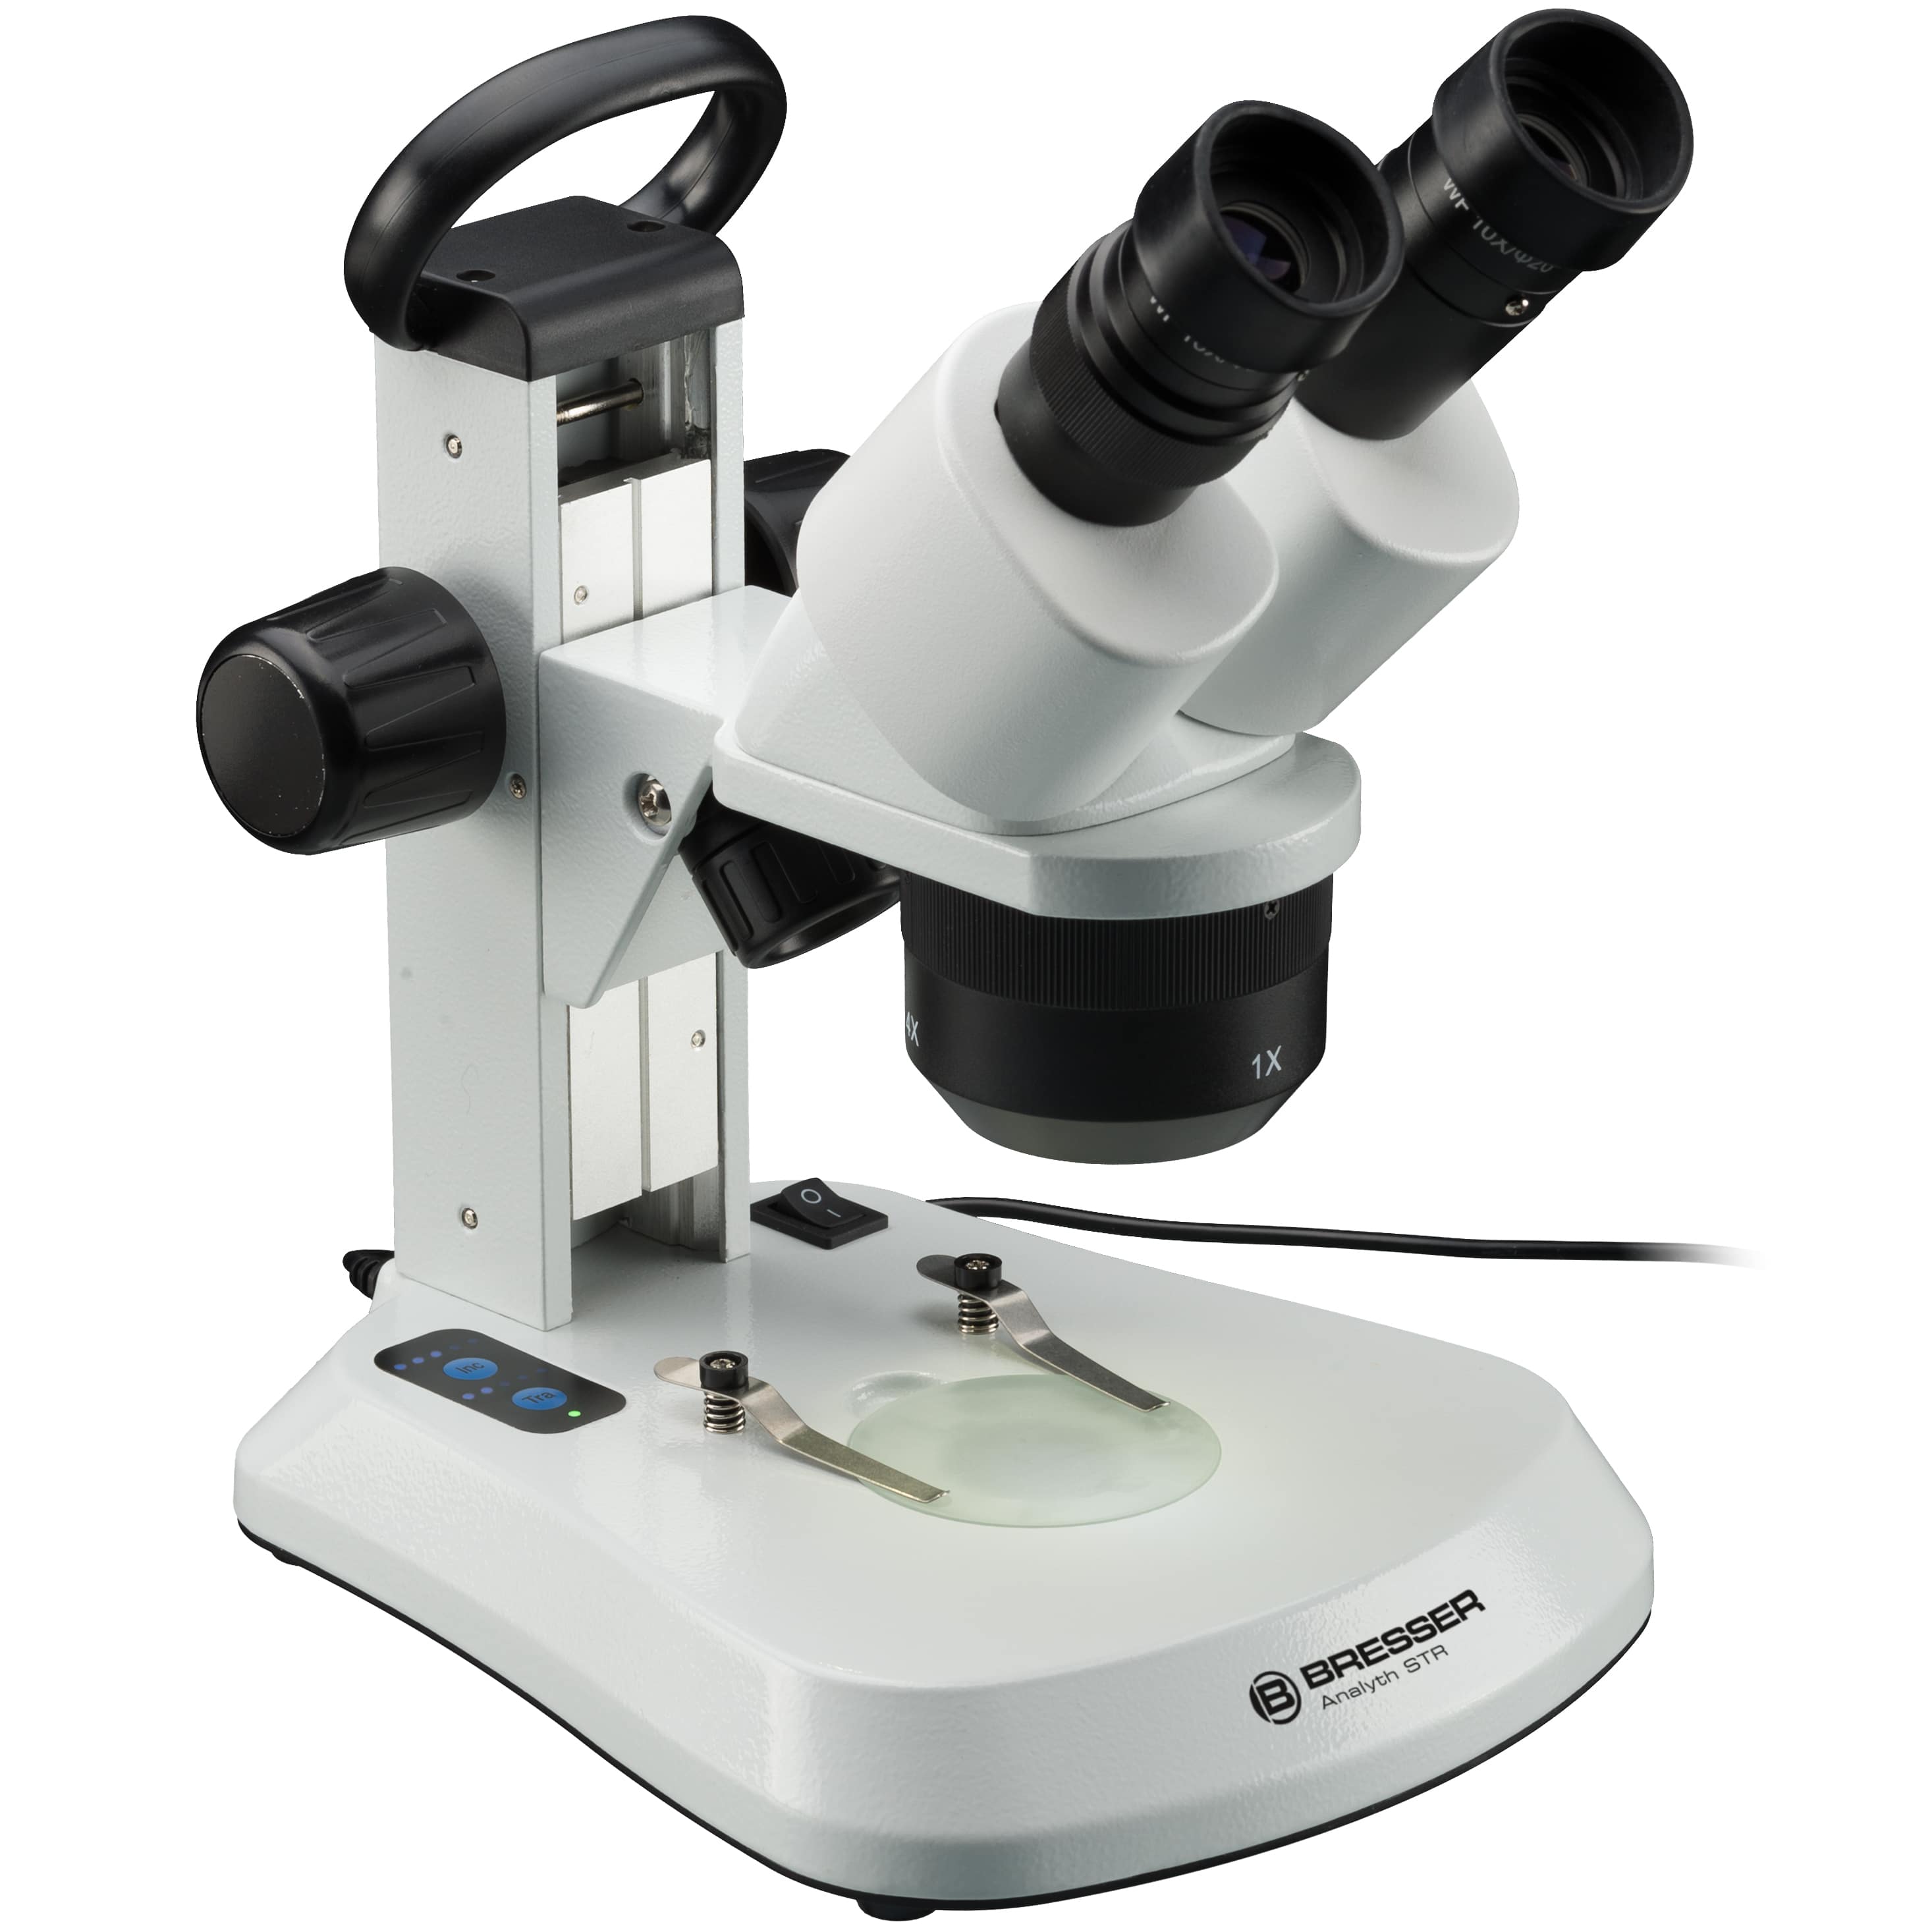   Stereomicroscopio con obiettivi per 3 ingrandimenti diversi  